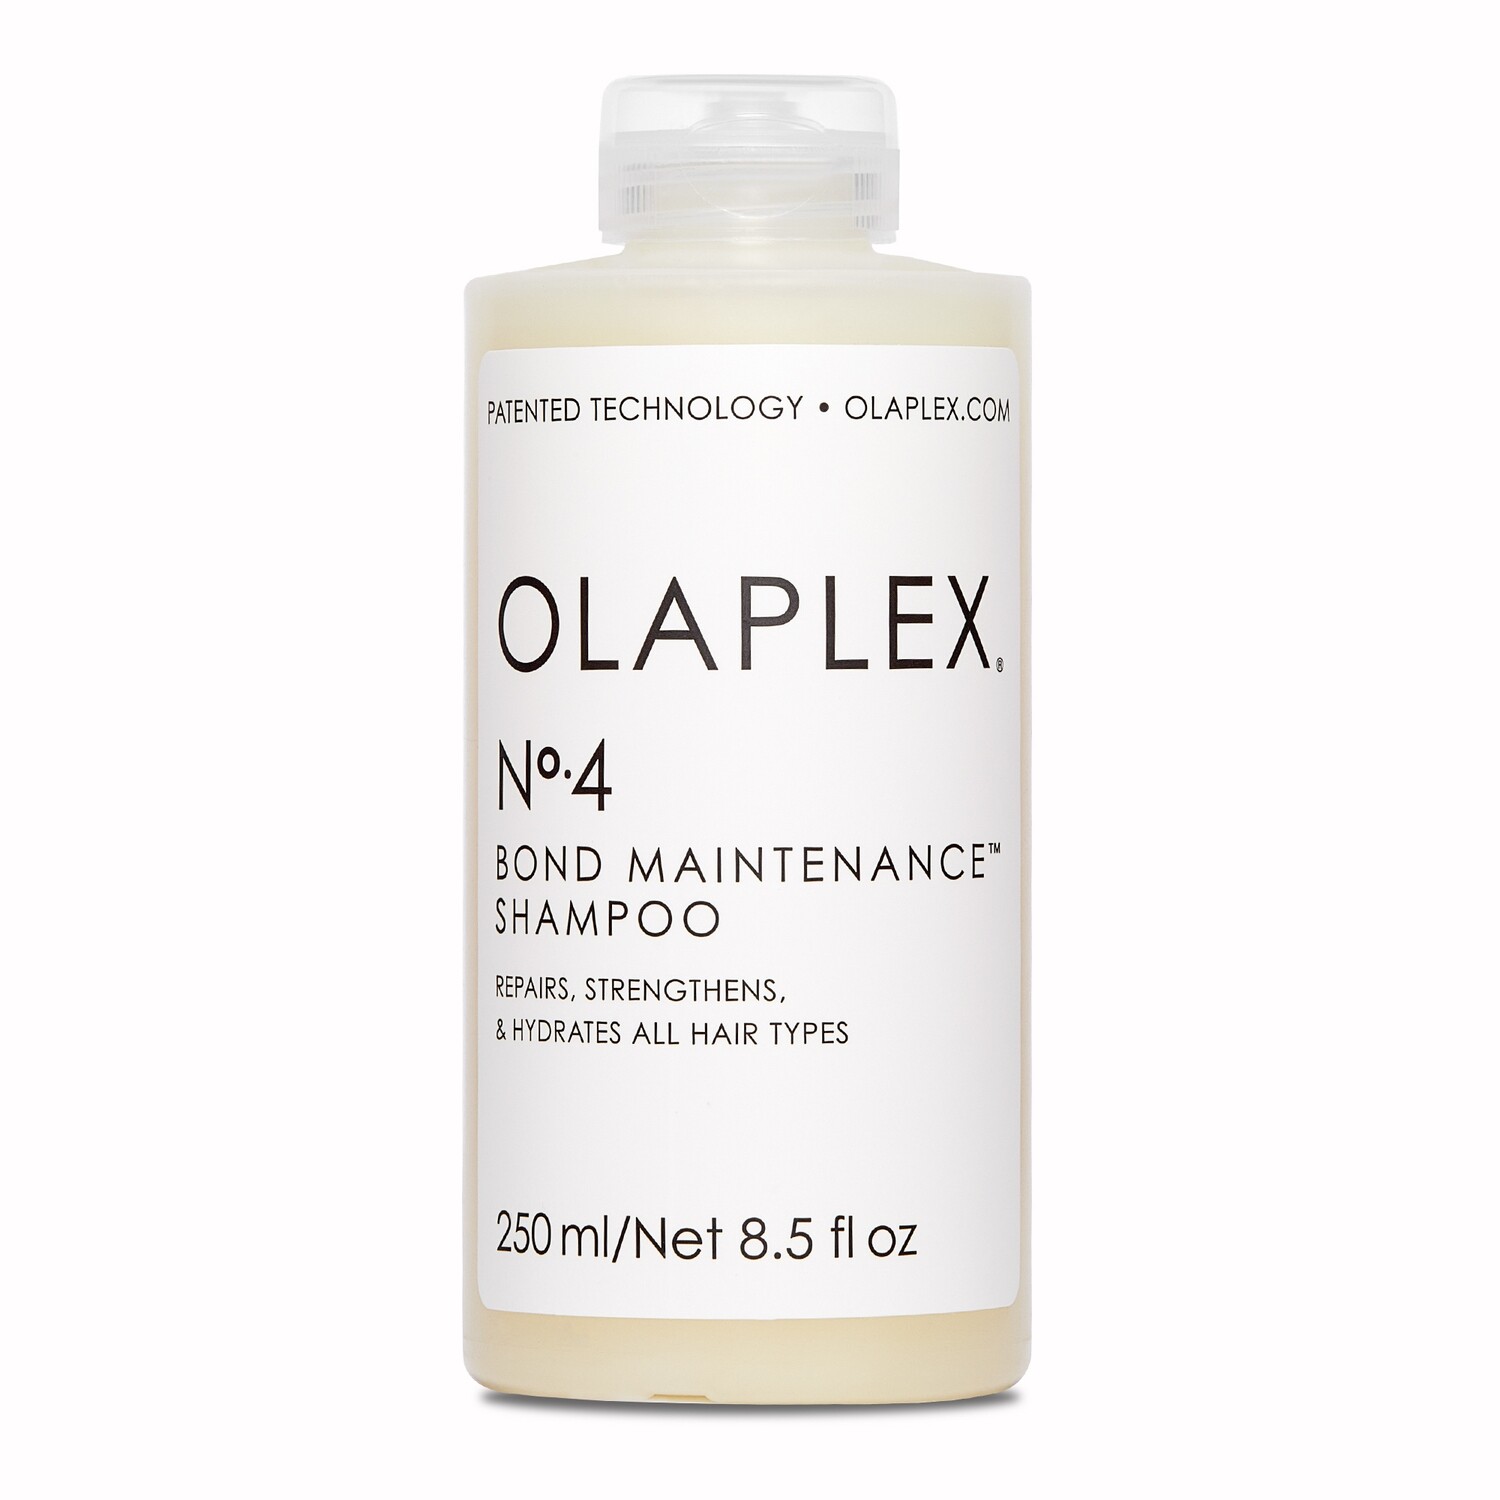 OLAPLEX N°4 BOND MAINTENANCE SHAMPOO